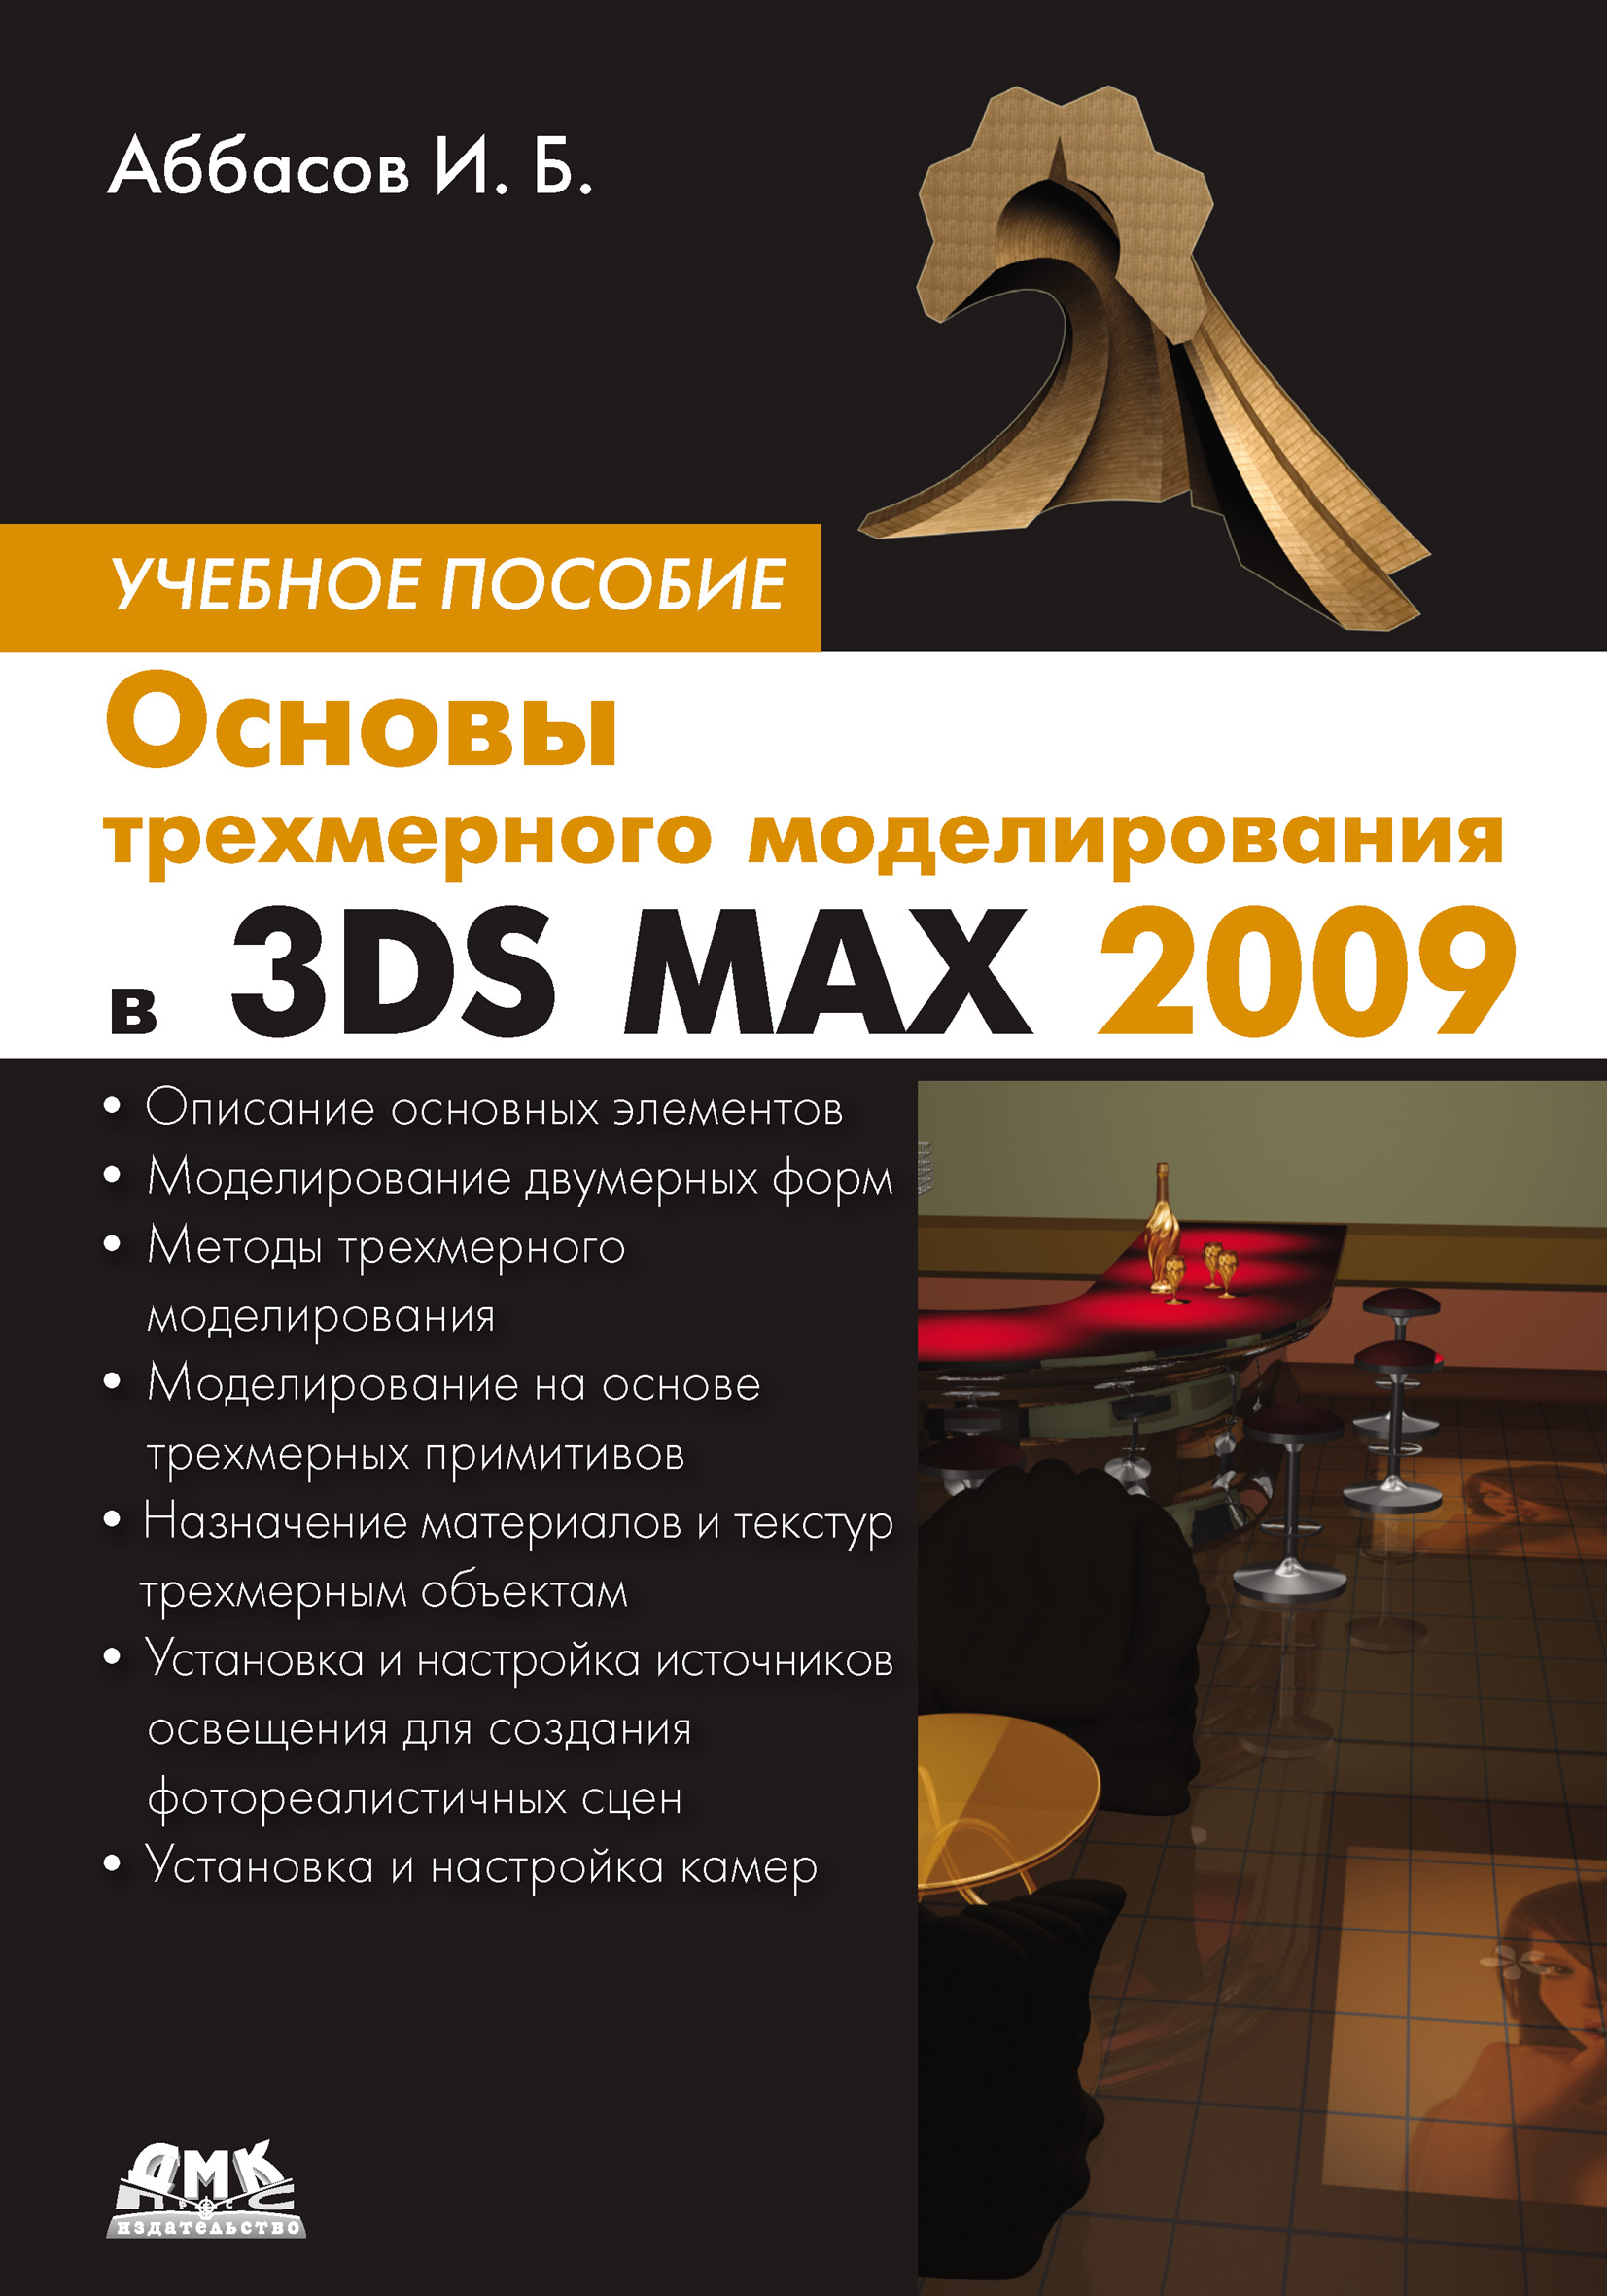 Книга  Основы трехмерного моделирования в 3DS MAX 2009 созданная И. Б. Аббасов может относится к жанру программы. Стоимость электронной книги Основы трехмерного моделирования в 3DS MAX 2009 с идентификатором 10008694 составляет 119.00 руб.